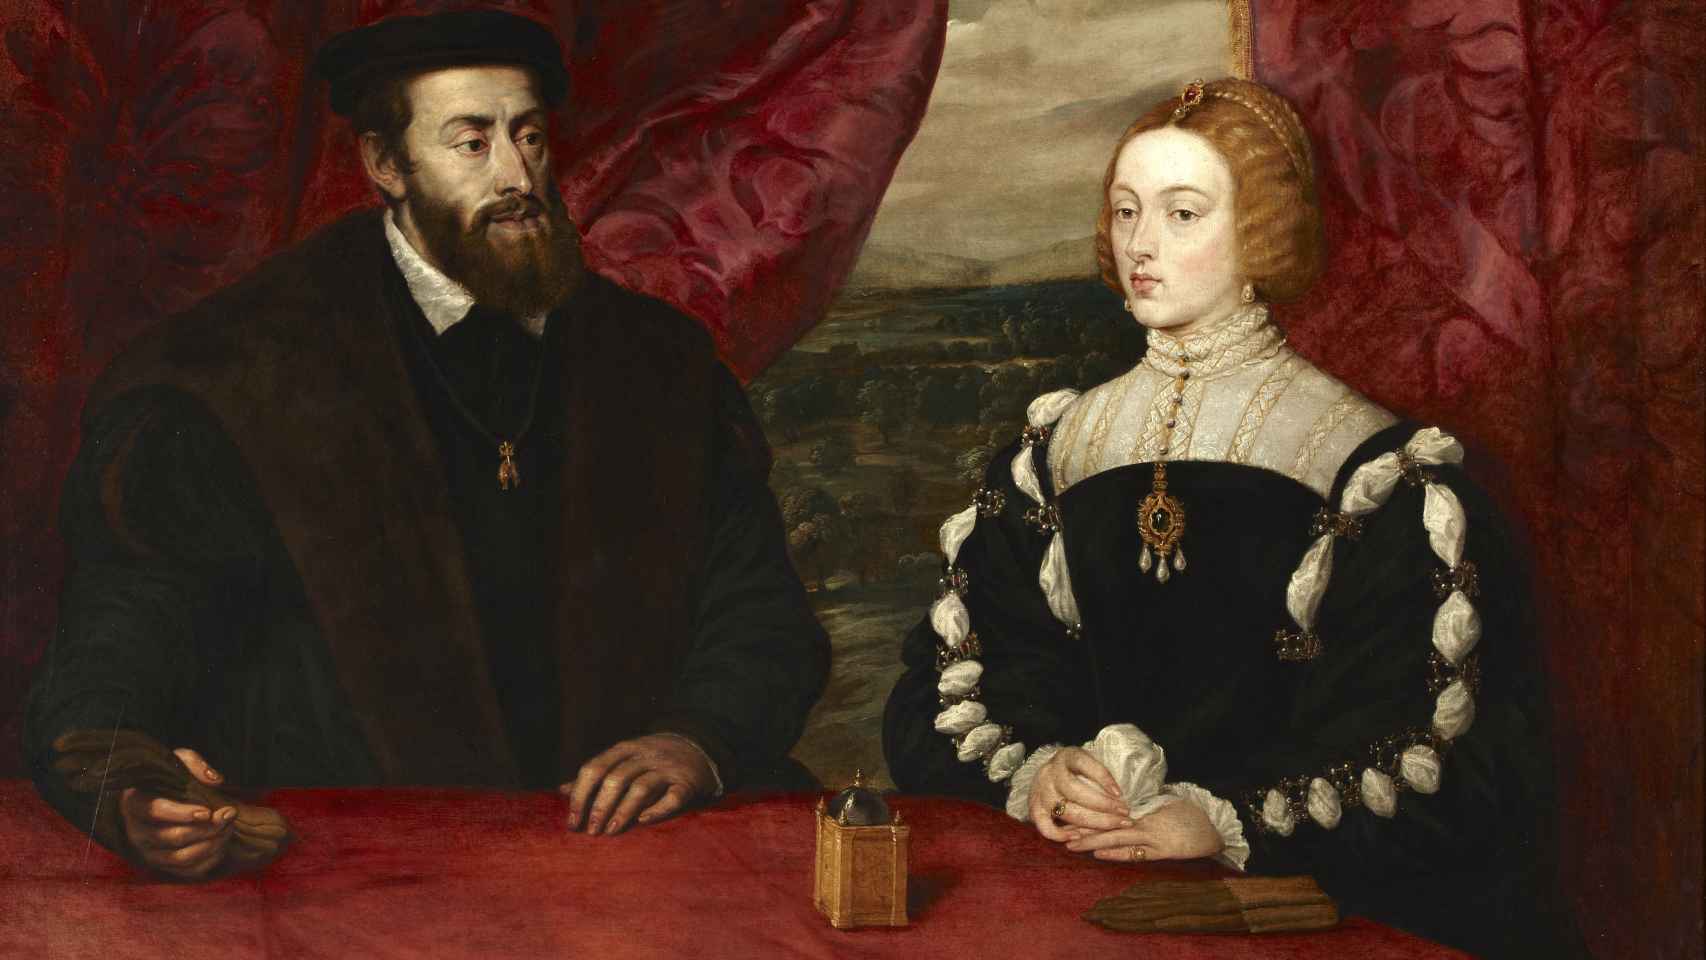 Retrato pintado por Rubens del emperador Carlos V y la emperatriz Isabel de Portugal.